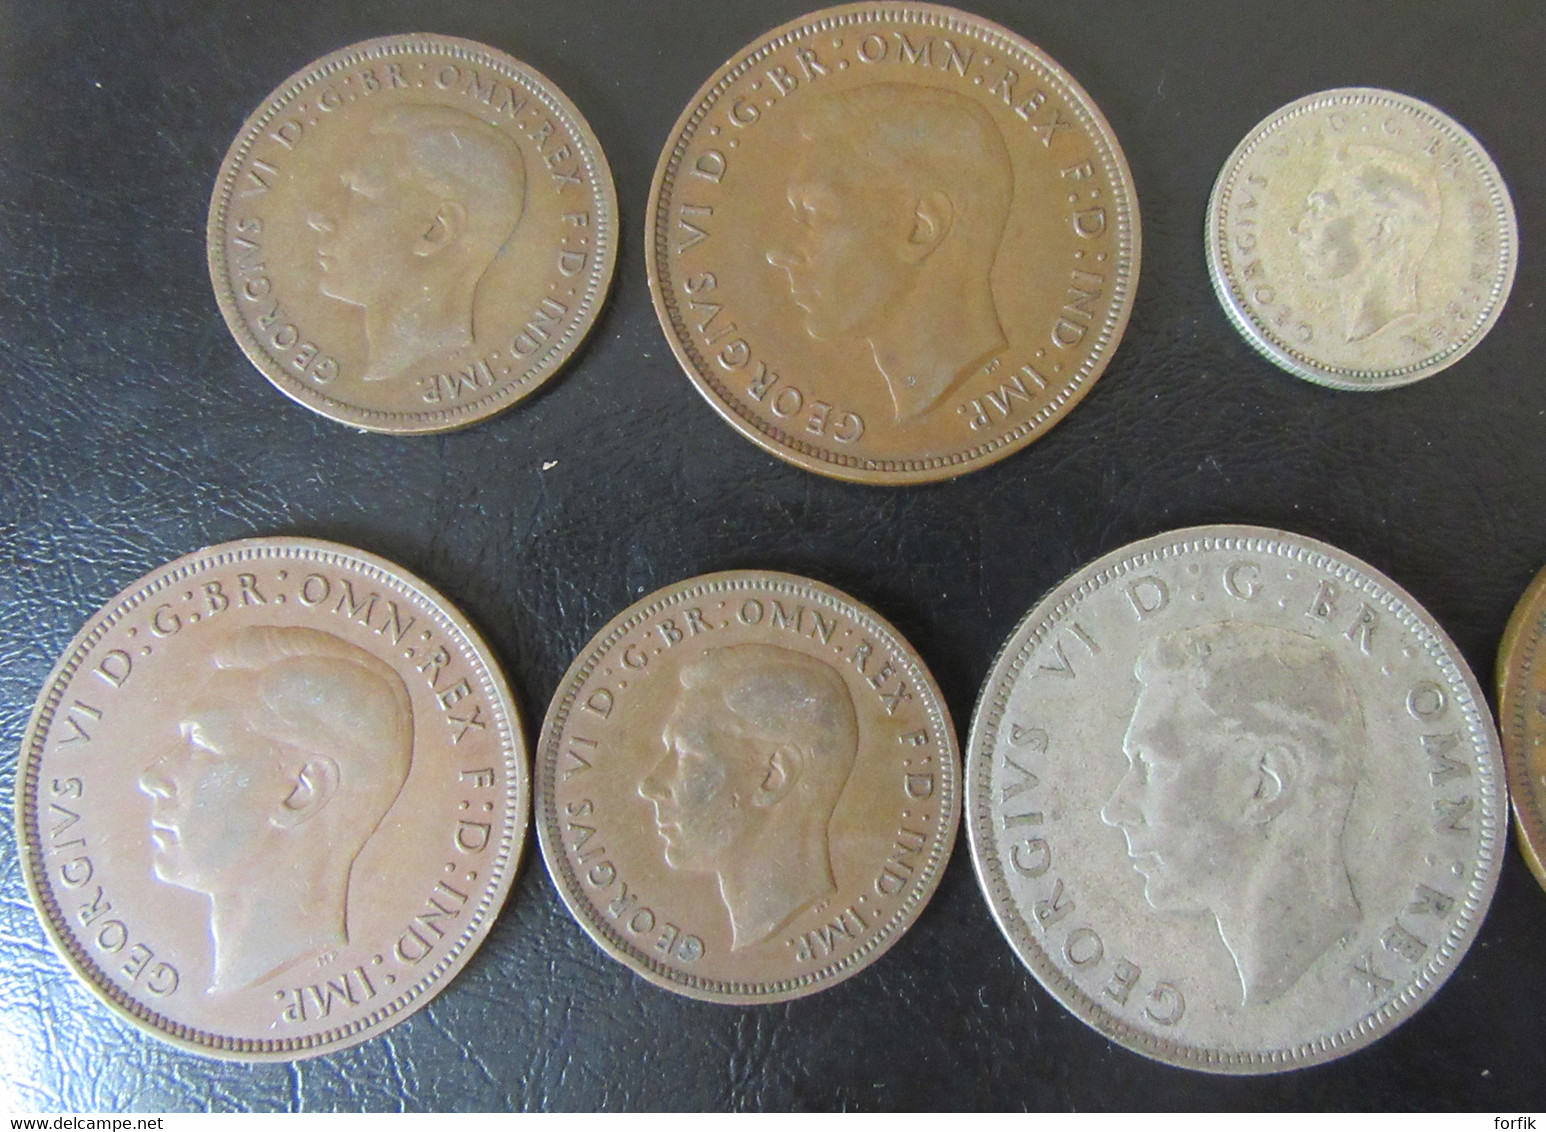 Angleterre - 25 Monnaies entre 1899 et 1950 (Victoria, George V, George VI) dont 2 en argent